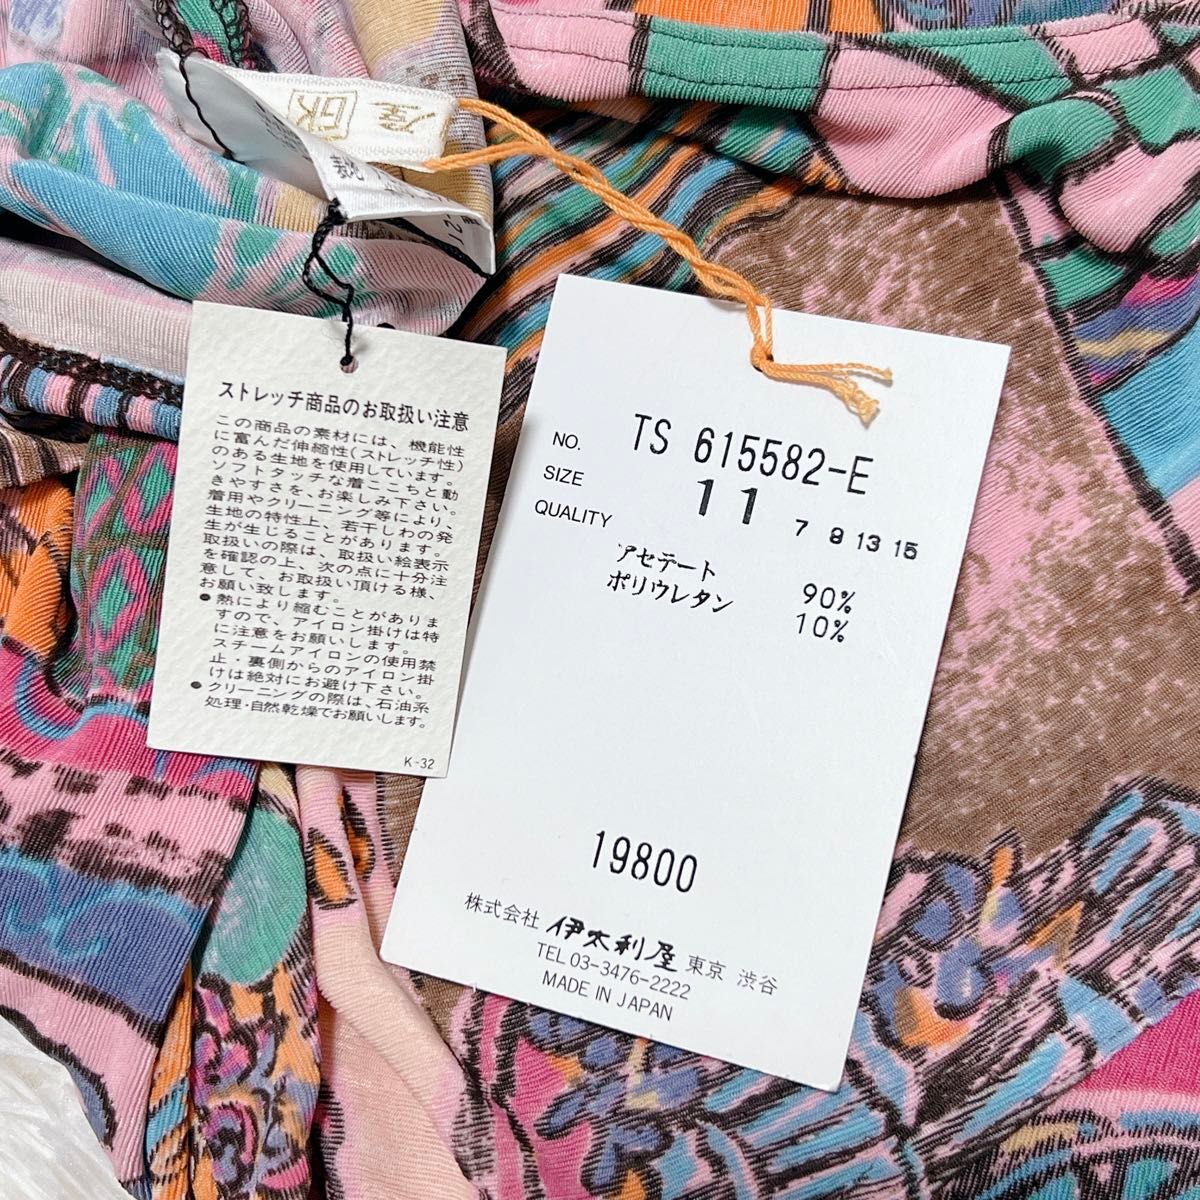 【新品】伊太利屋 半袖カットソー Tシャツ イラスト カラフル 11 M L